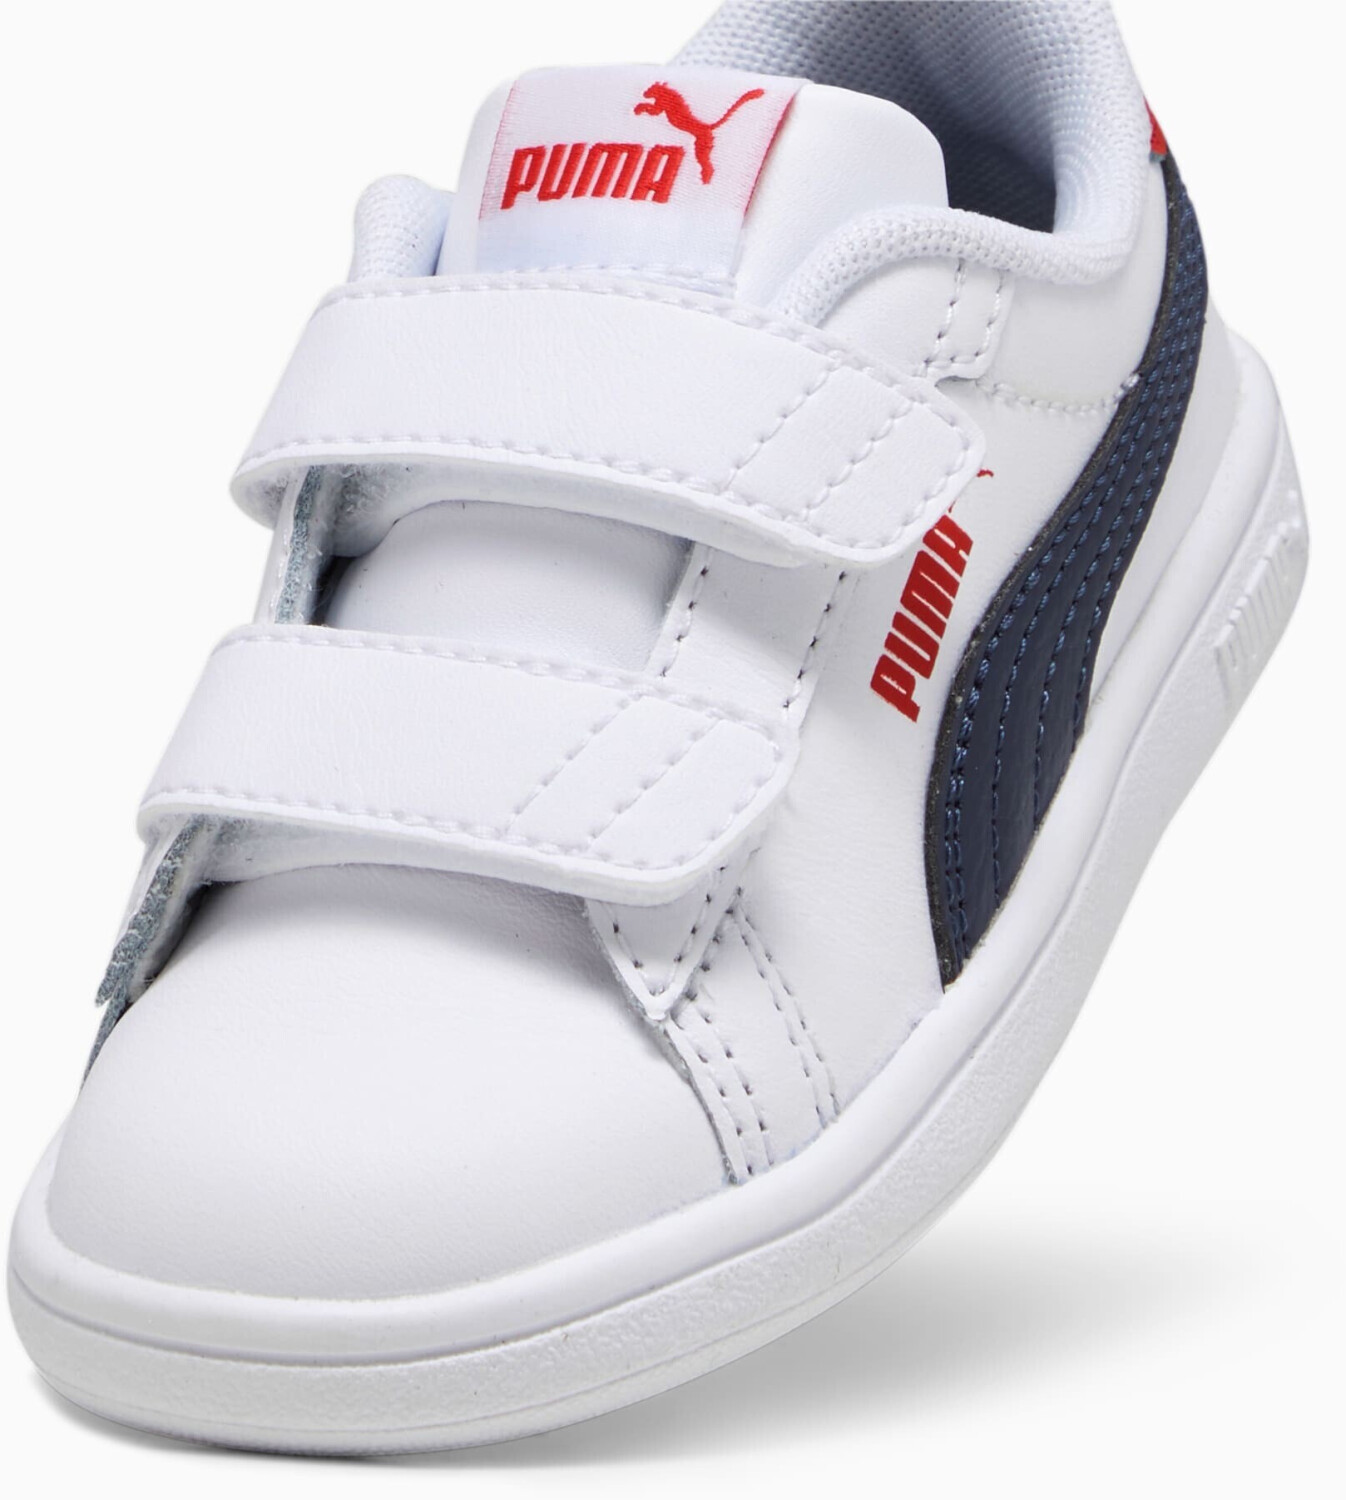 idealo en Puma Baby 3.0 Smash 41,95 red navy/for Compara time | white/puma desde V € puma Leather (392034-11) precios all